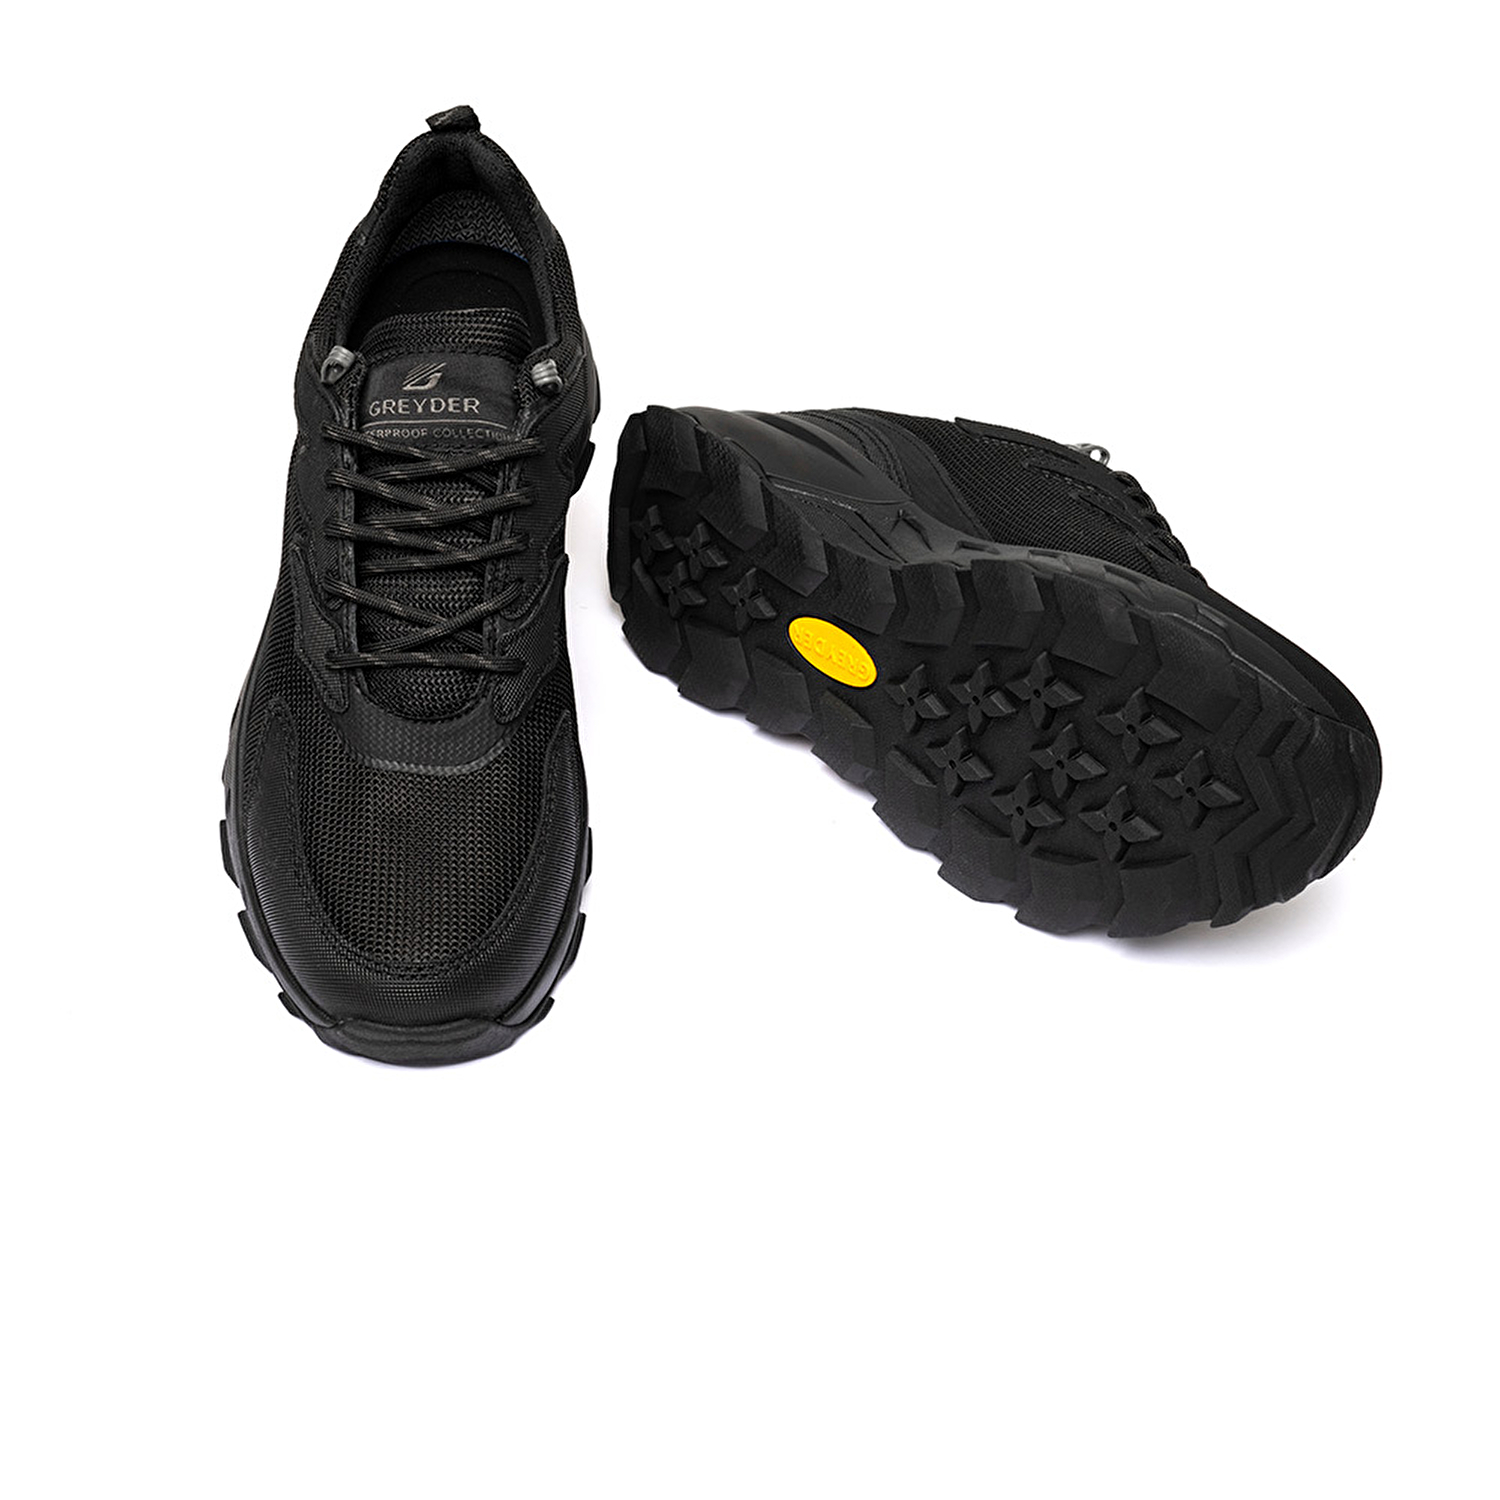 Erkek Siyah Hakiki Deri Su Geçirmez Outdoor Ayakkabı 3K1GA16345-5